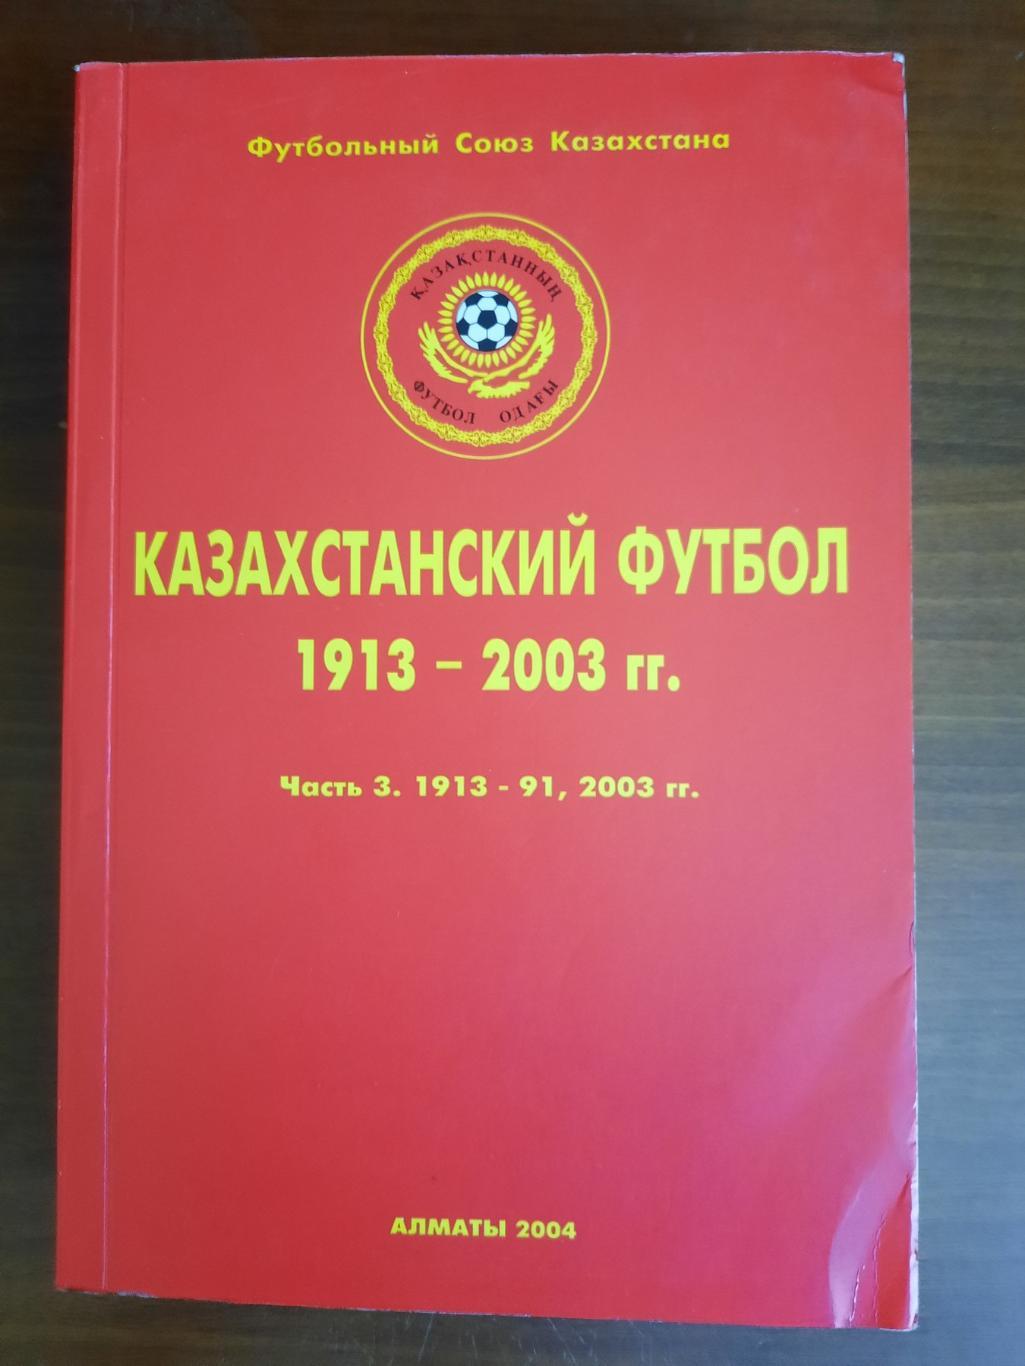 Казахстанский футбол. Часть 3 1913 - 1991, 2003